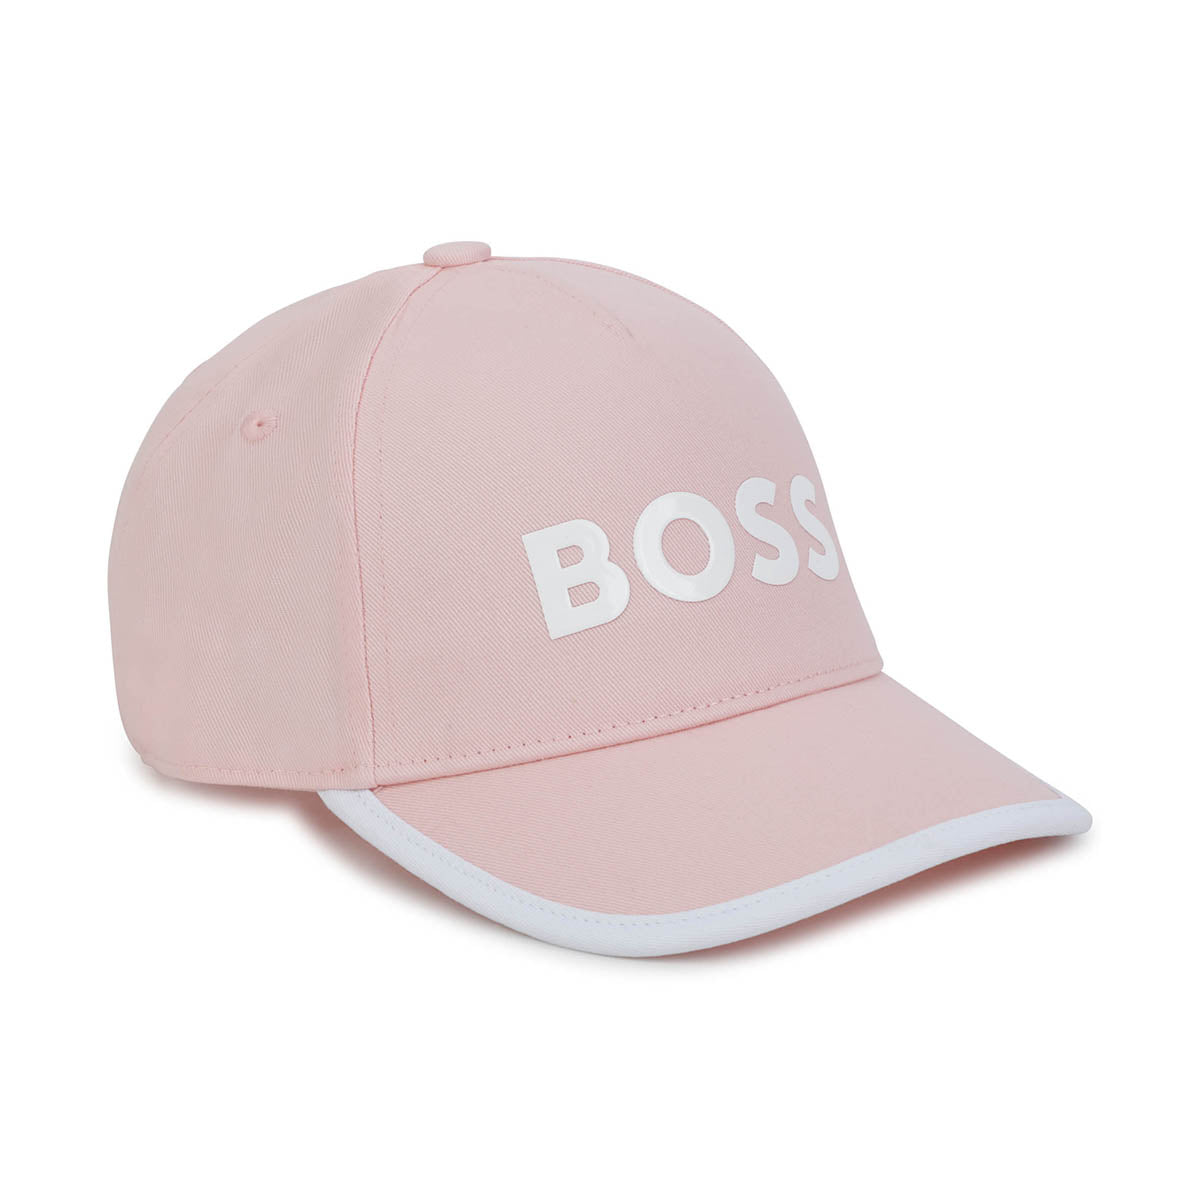 כובע מצחייה BOSS הדפס לוגו לילדות